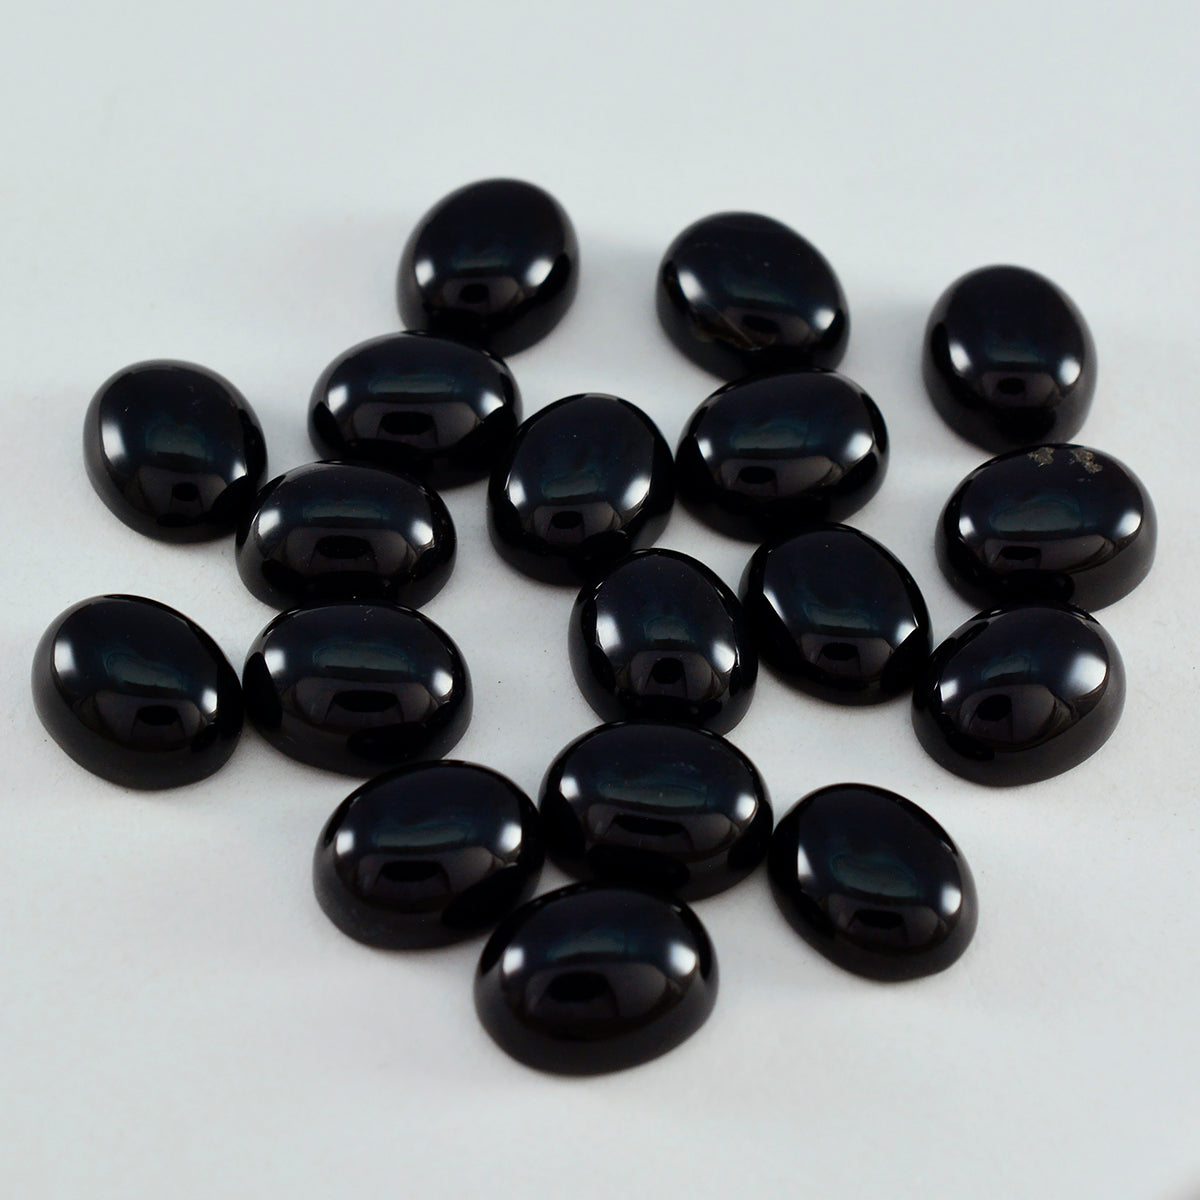 riyogems 1шт черный оникс кабошон 6х8 мм овальной формы драгоценный камень отличного качества